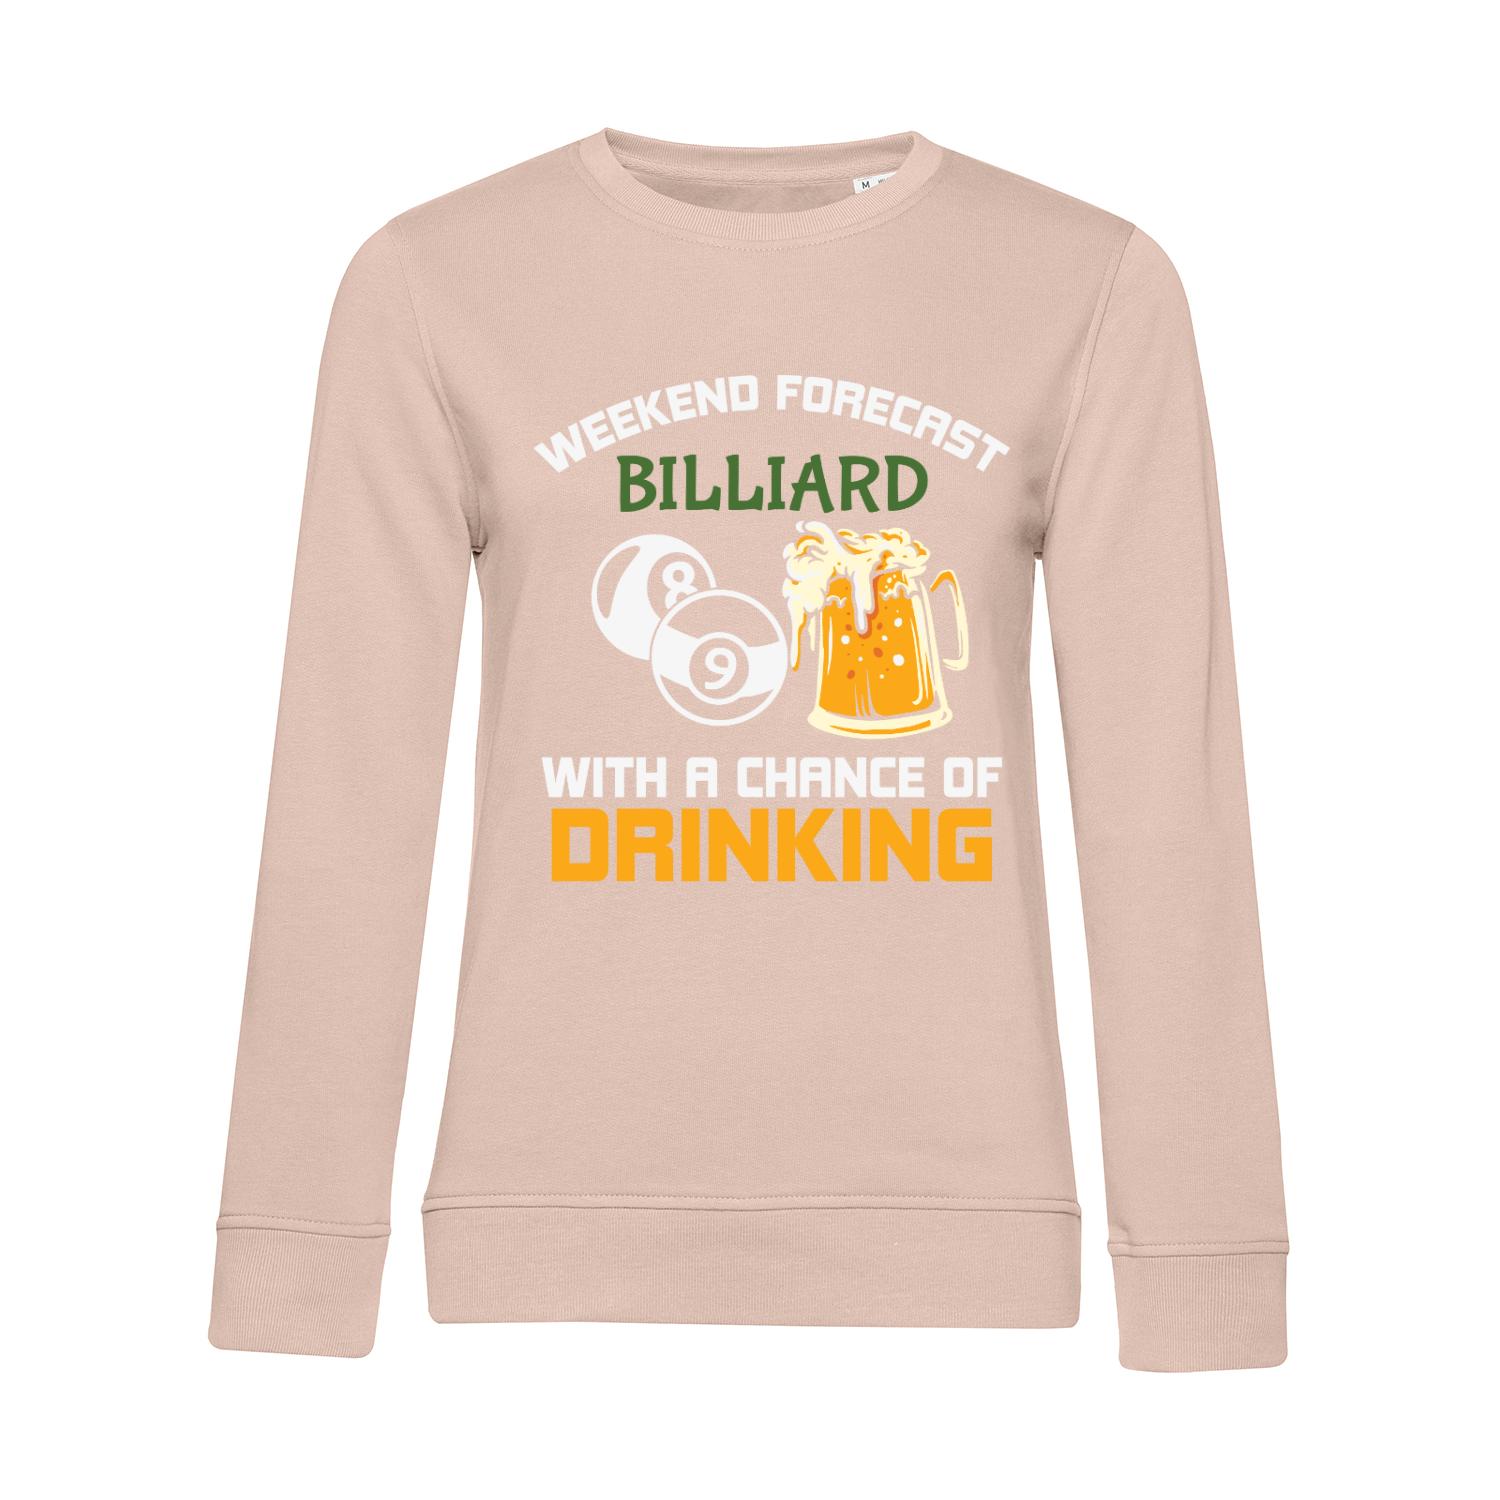 Nachhaltiges Sweatshirt Damen Billard Weekend Forecast